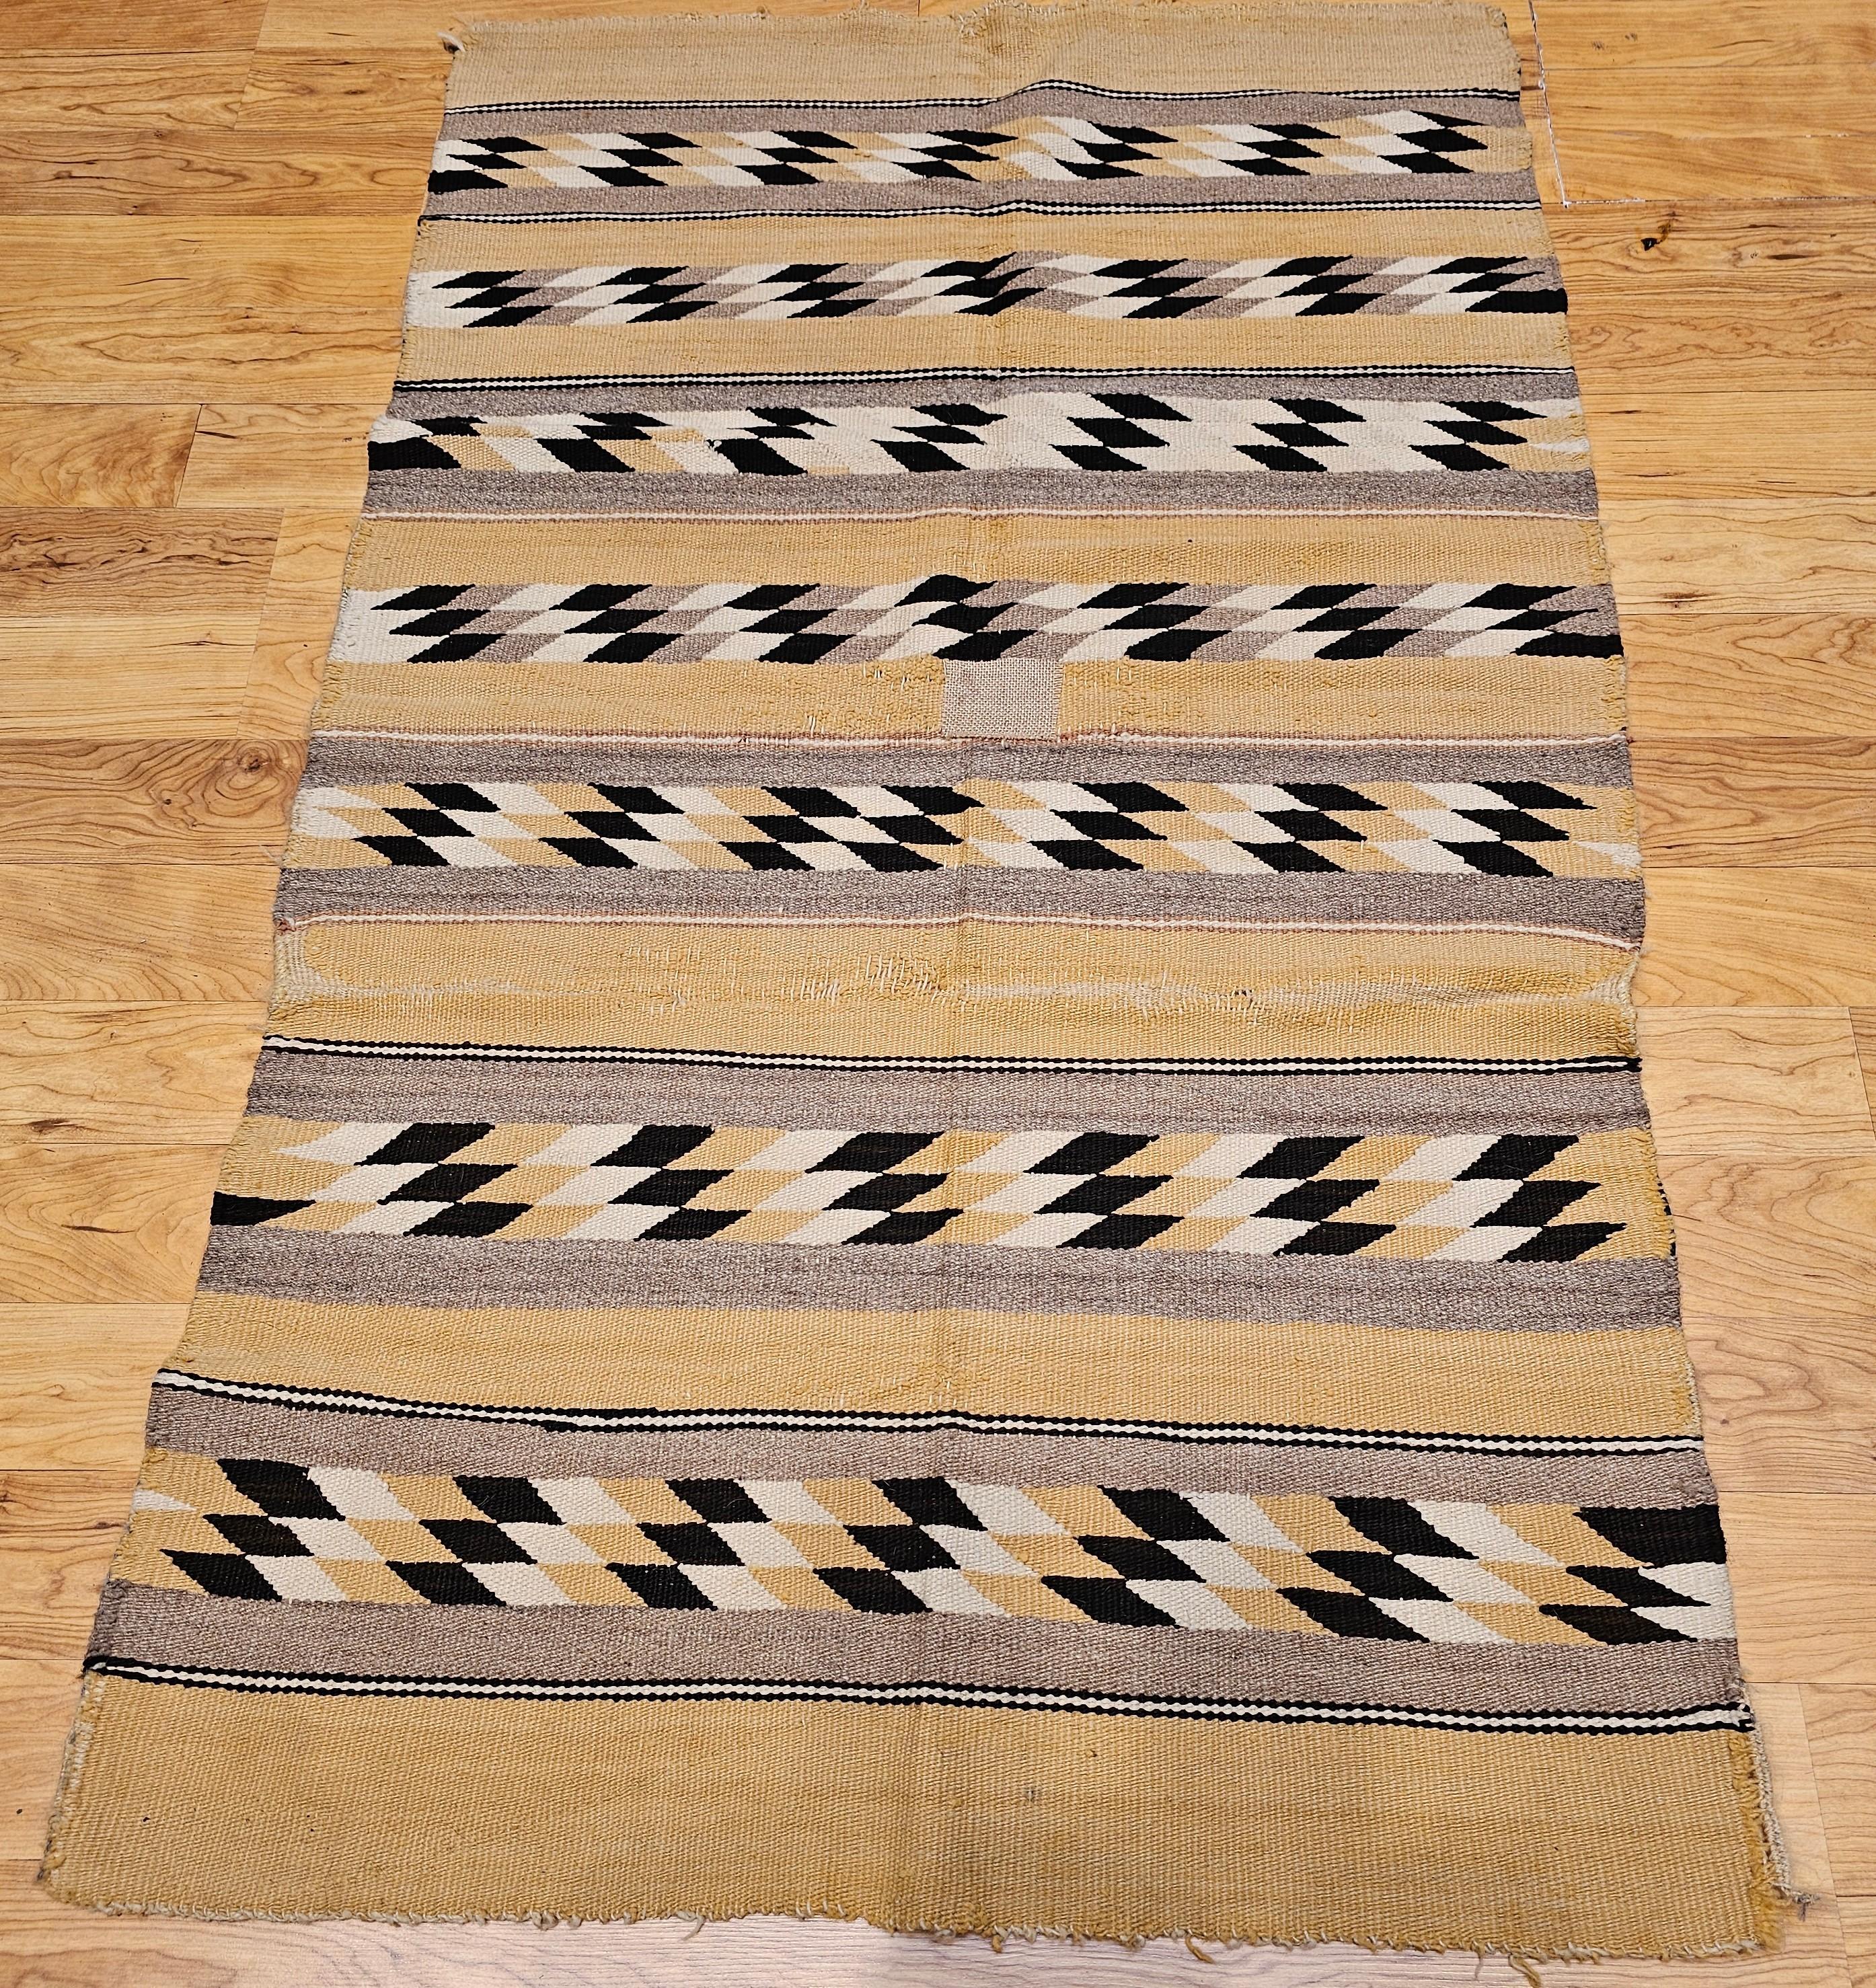 Vintage Navajo-Teppich in einem Chinle-Revival-Muster in Erdtönen wie Maismehl, Braun, Schwarz, Elfenbein und Grau.  Der alte Navajo-Teppich ist aus einheimischer, handgesponnener Wolle in einem Chinle-Revival-Muster gewebt. Dieser Stil der Navajo